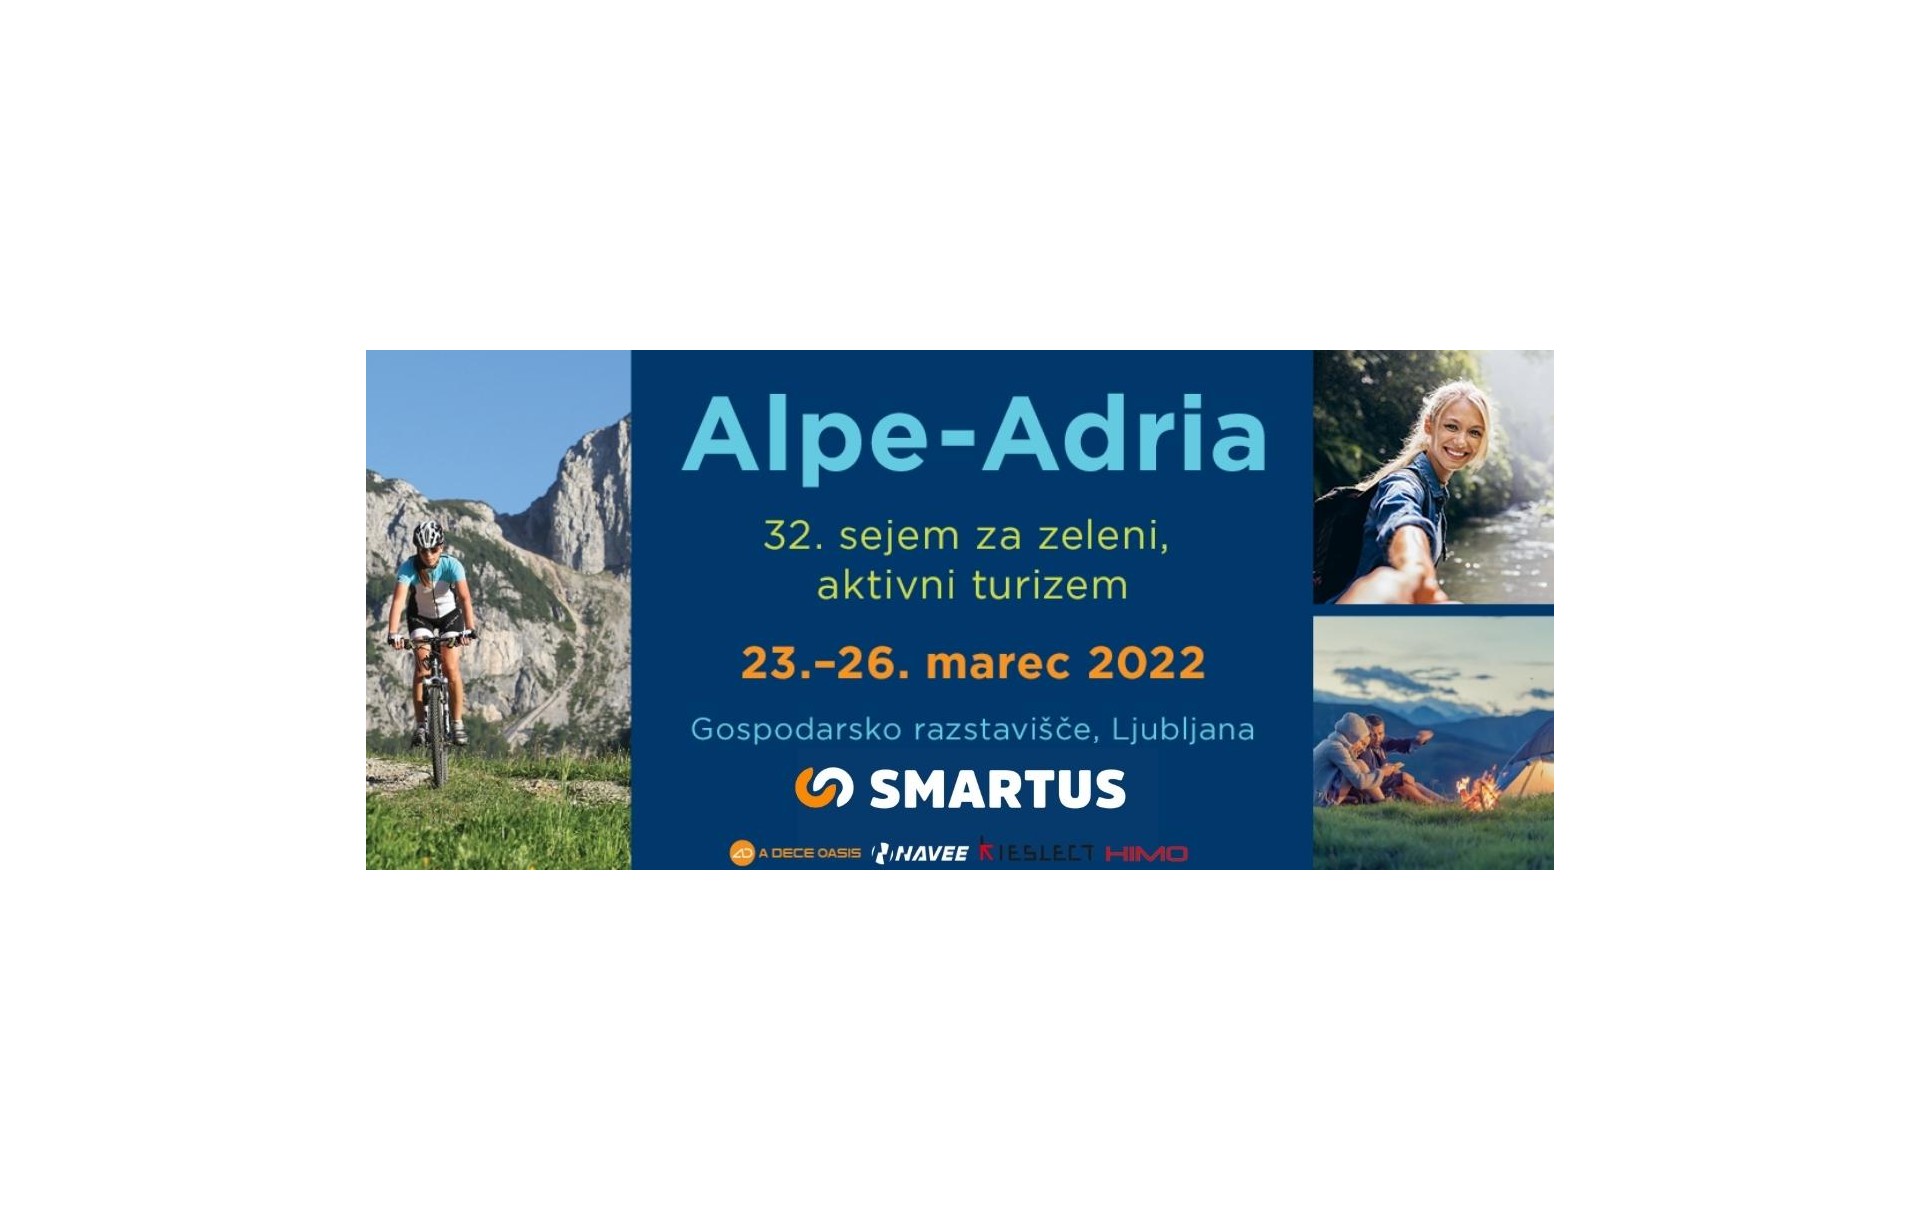 Smartus.si na sejemu Alpe - Adria med 23. in 26. marcem